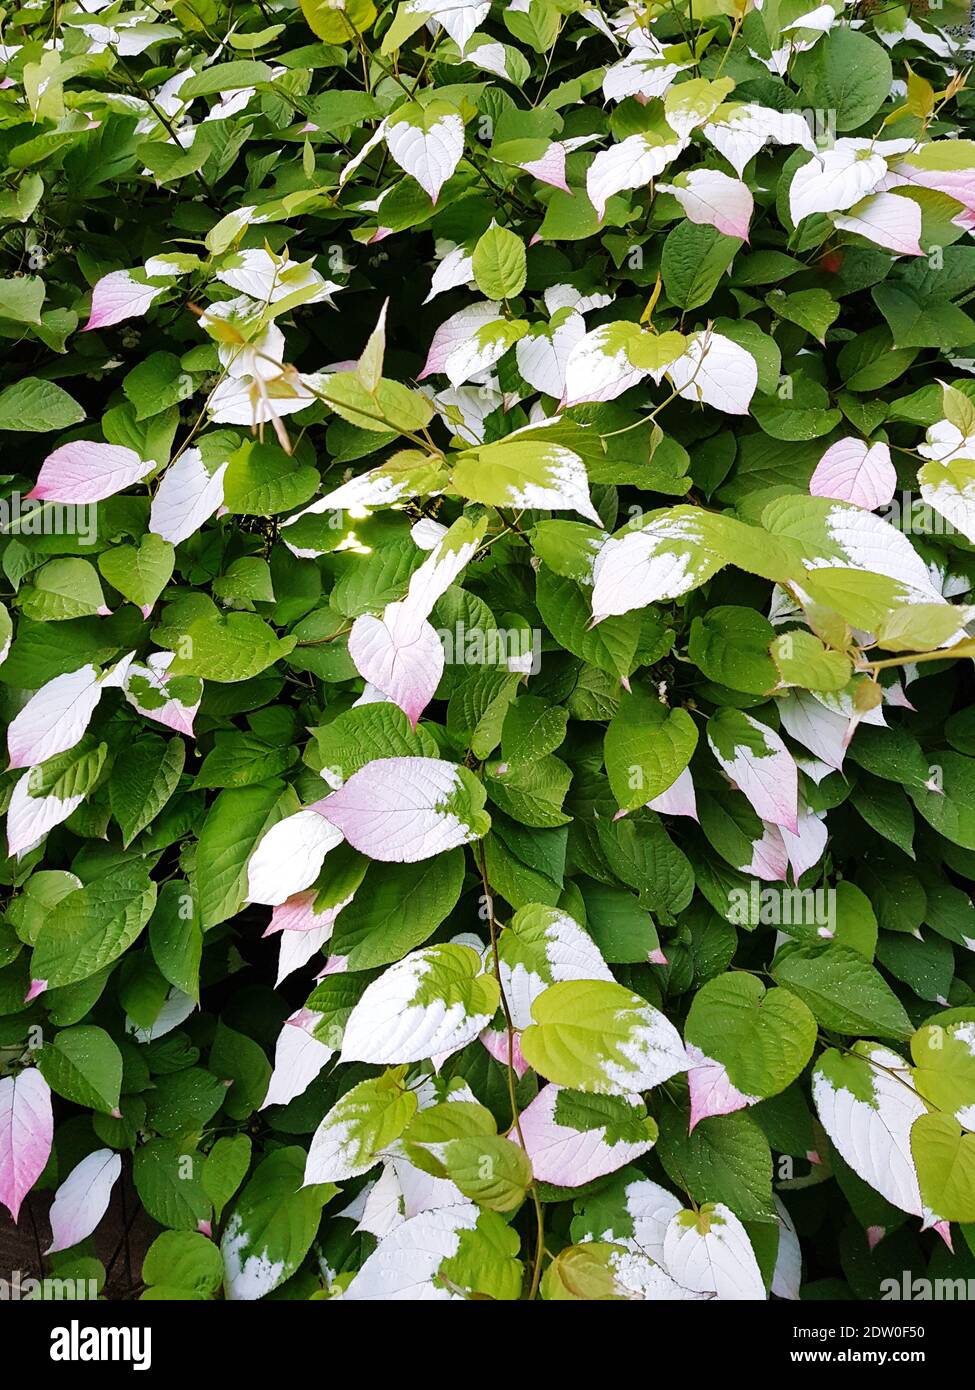 Full Frame Shot Of White Flowering Plants Stock Photo